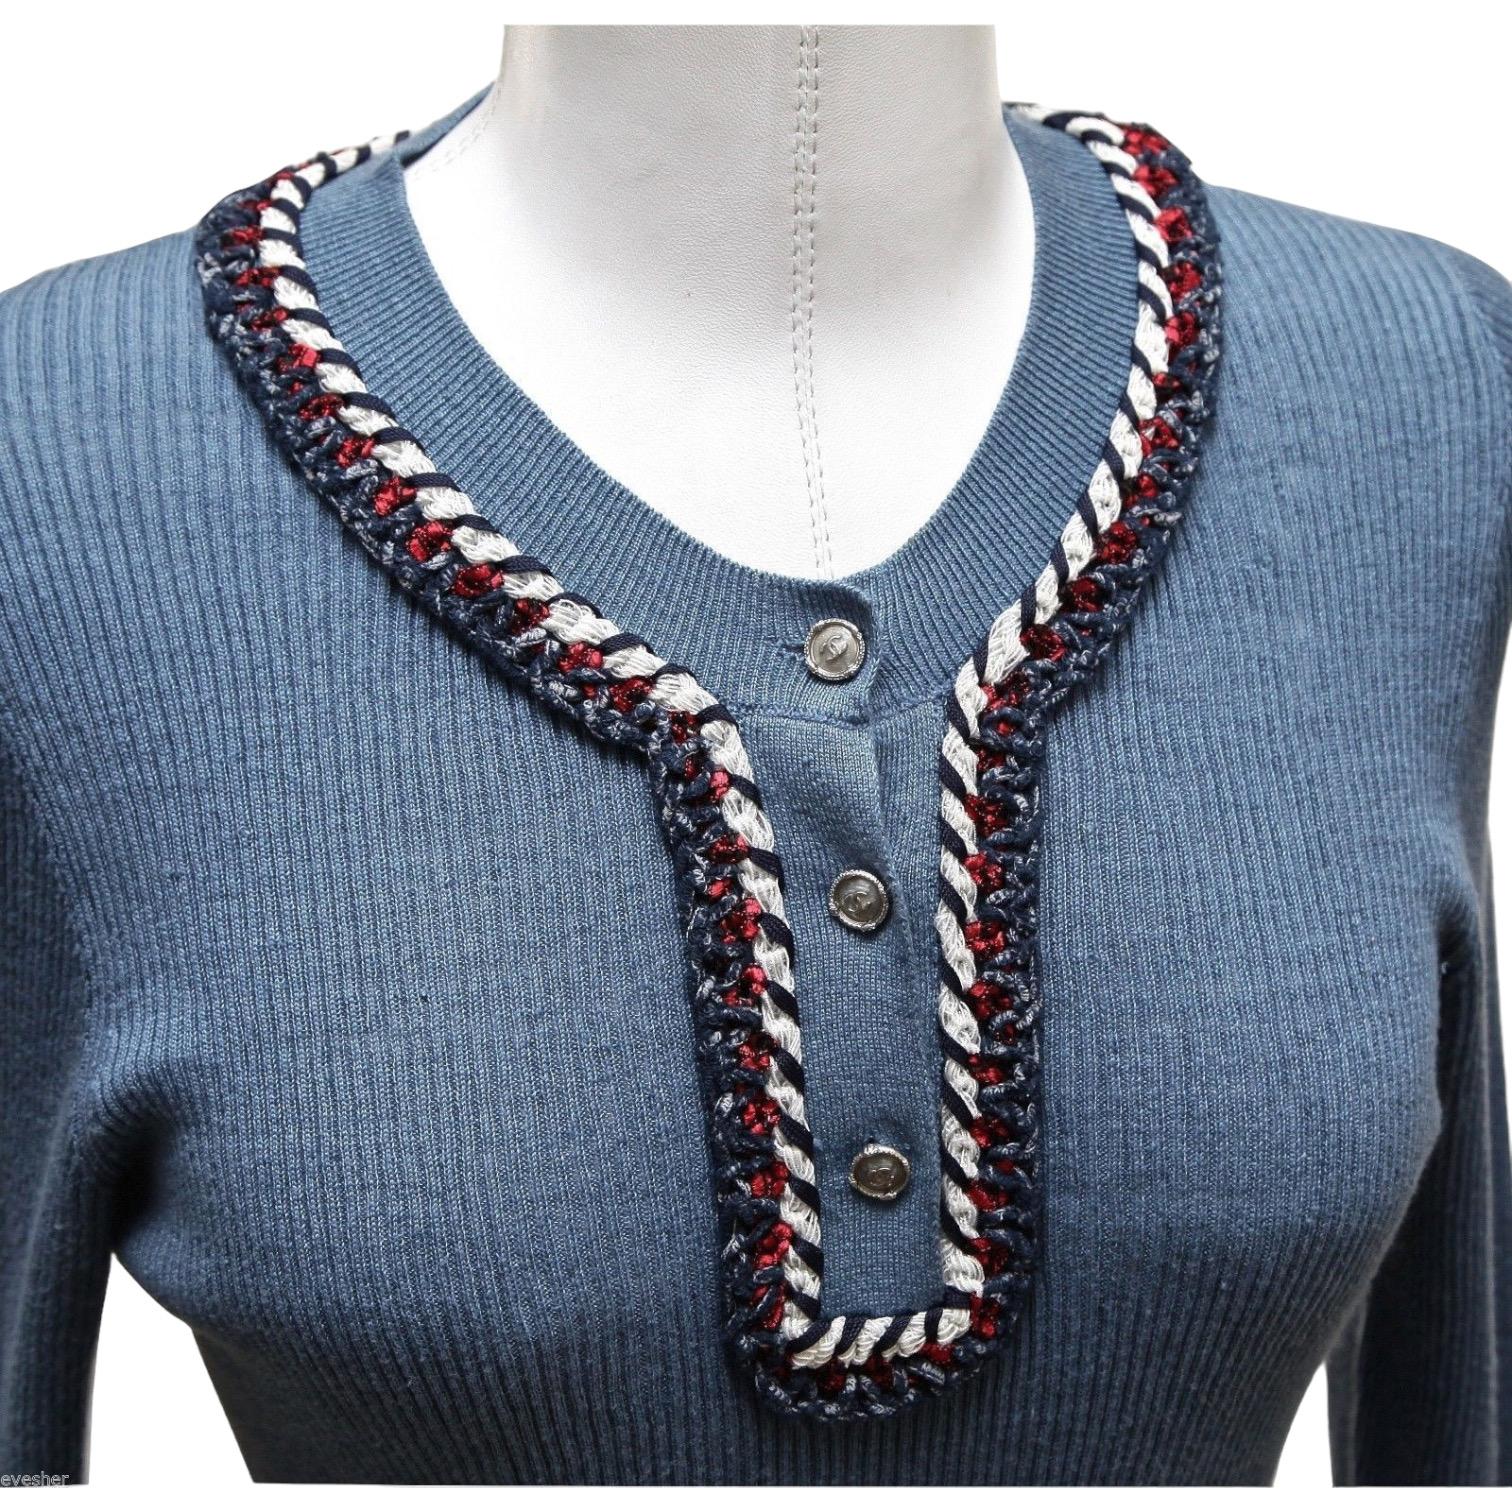 Gris CHANEL Pull en tricot à manches longues rouge marine blanc bleu argenté HW 40 13C 2013 en vente